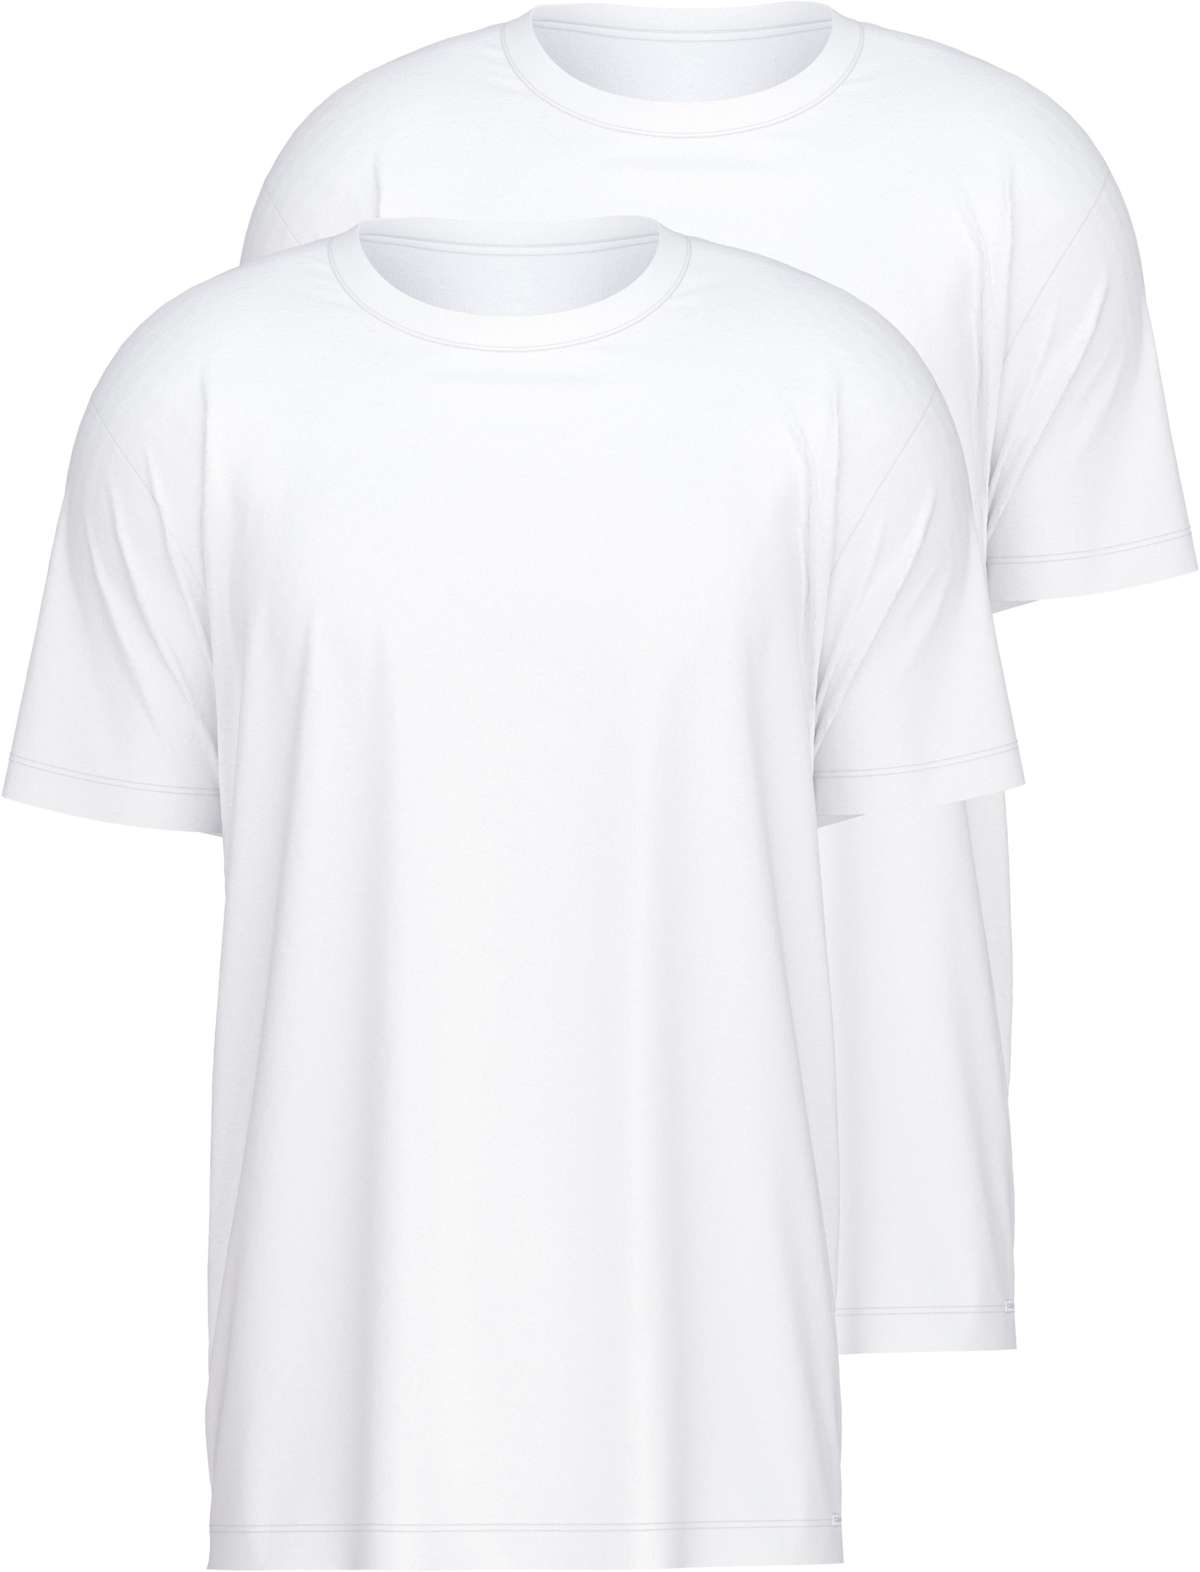 Футболка, облегающая рубашка с короткими рукавами, современный крой.